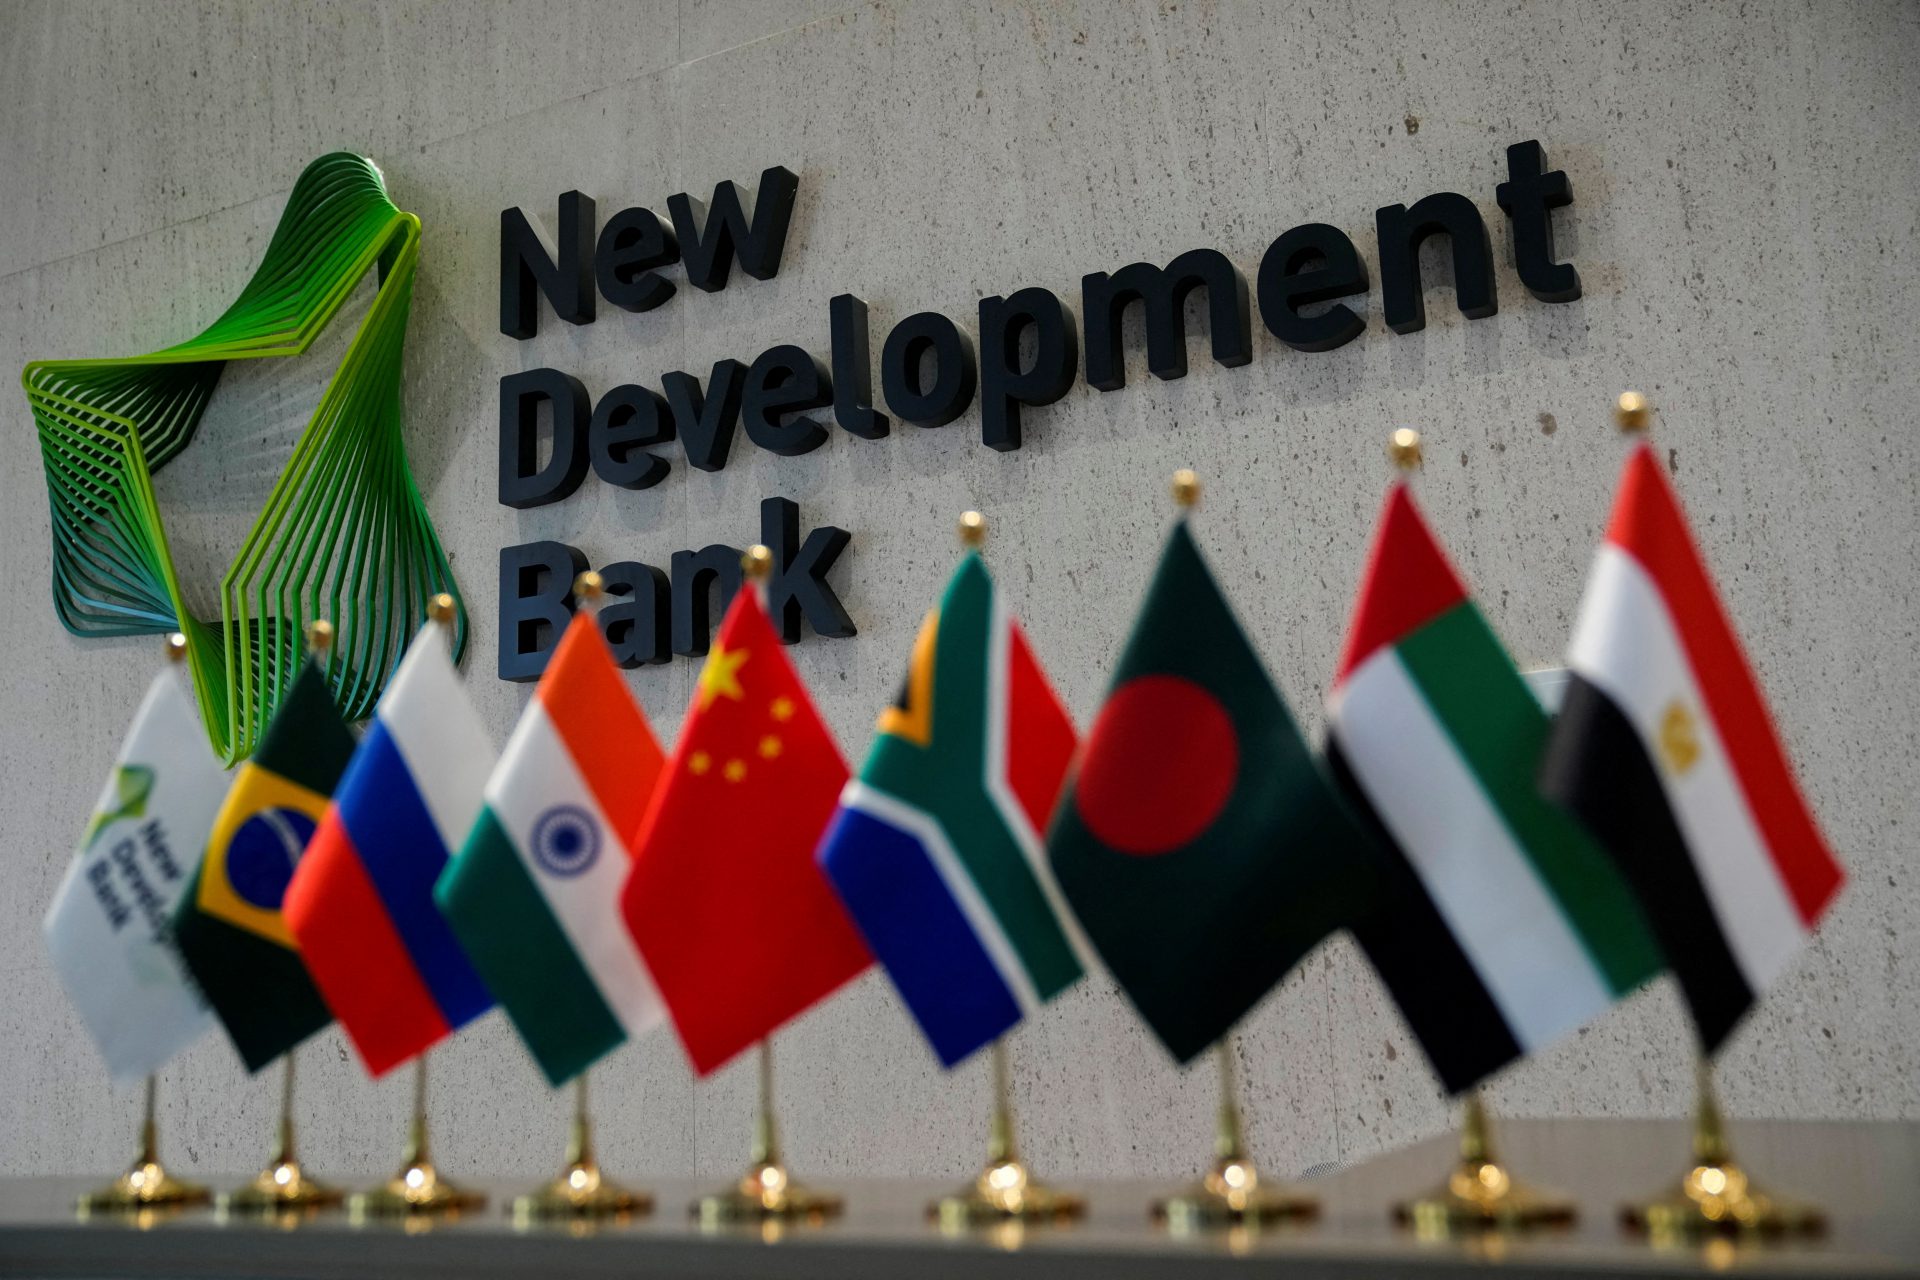 بانک BRICS کشورهای در حال توسعه را تشویق می کند تا دلار آمریکا را کاهش دهند